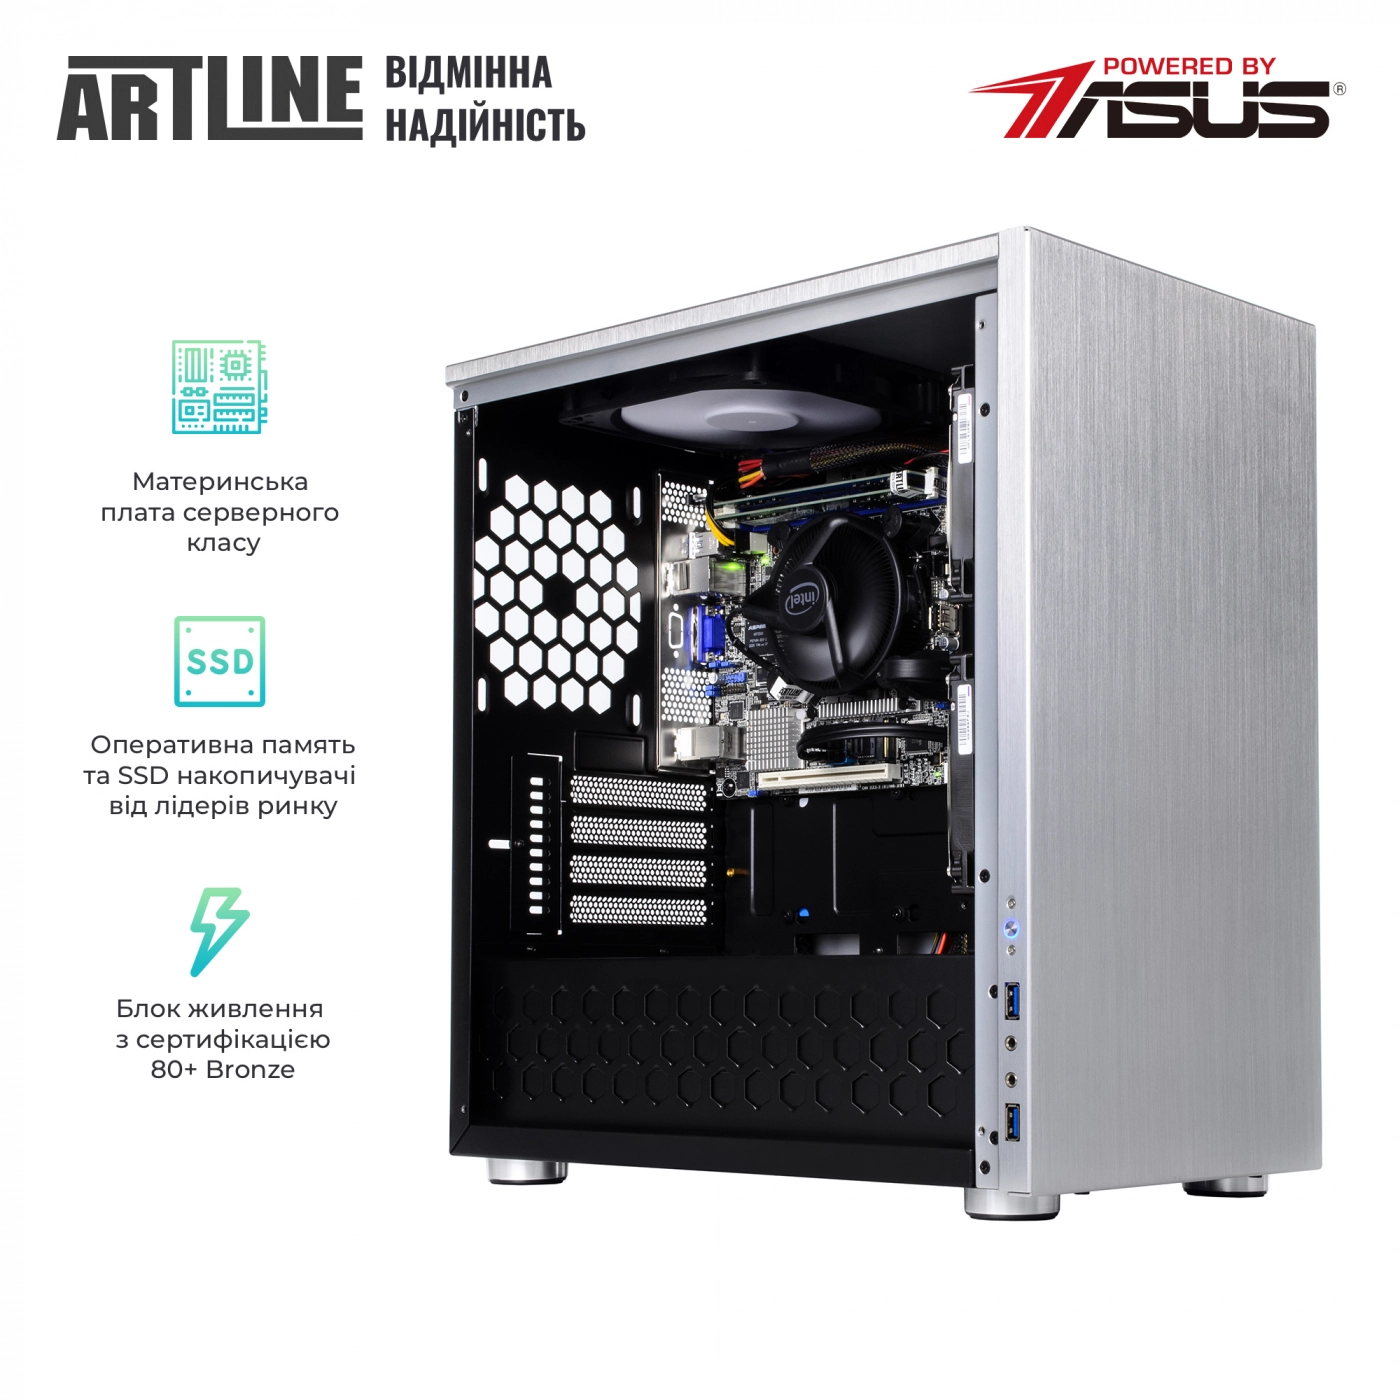 Купить Сервер ARTLINE Business T21v05 - фото 2